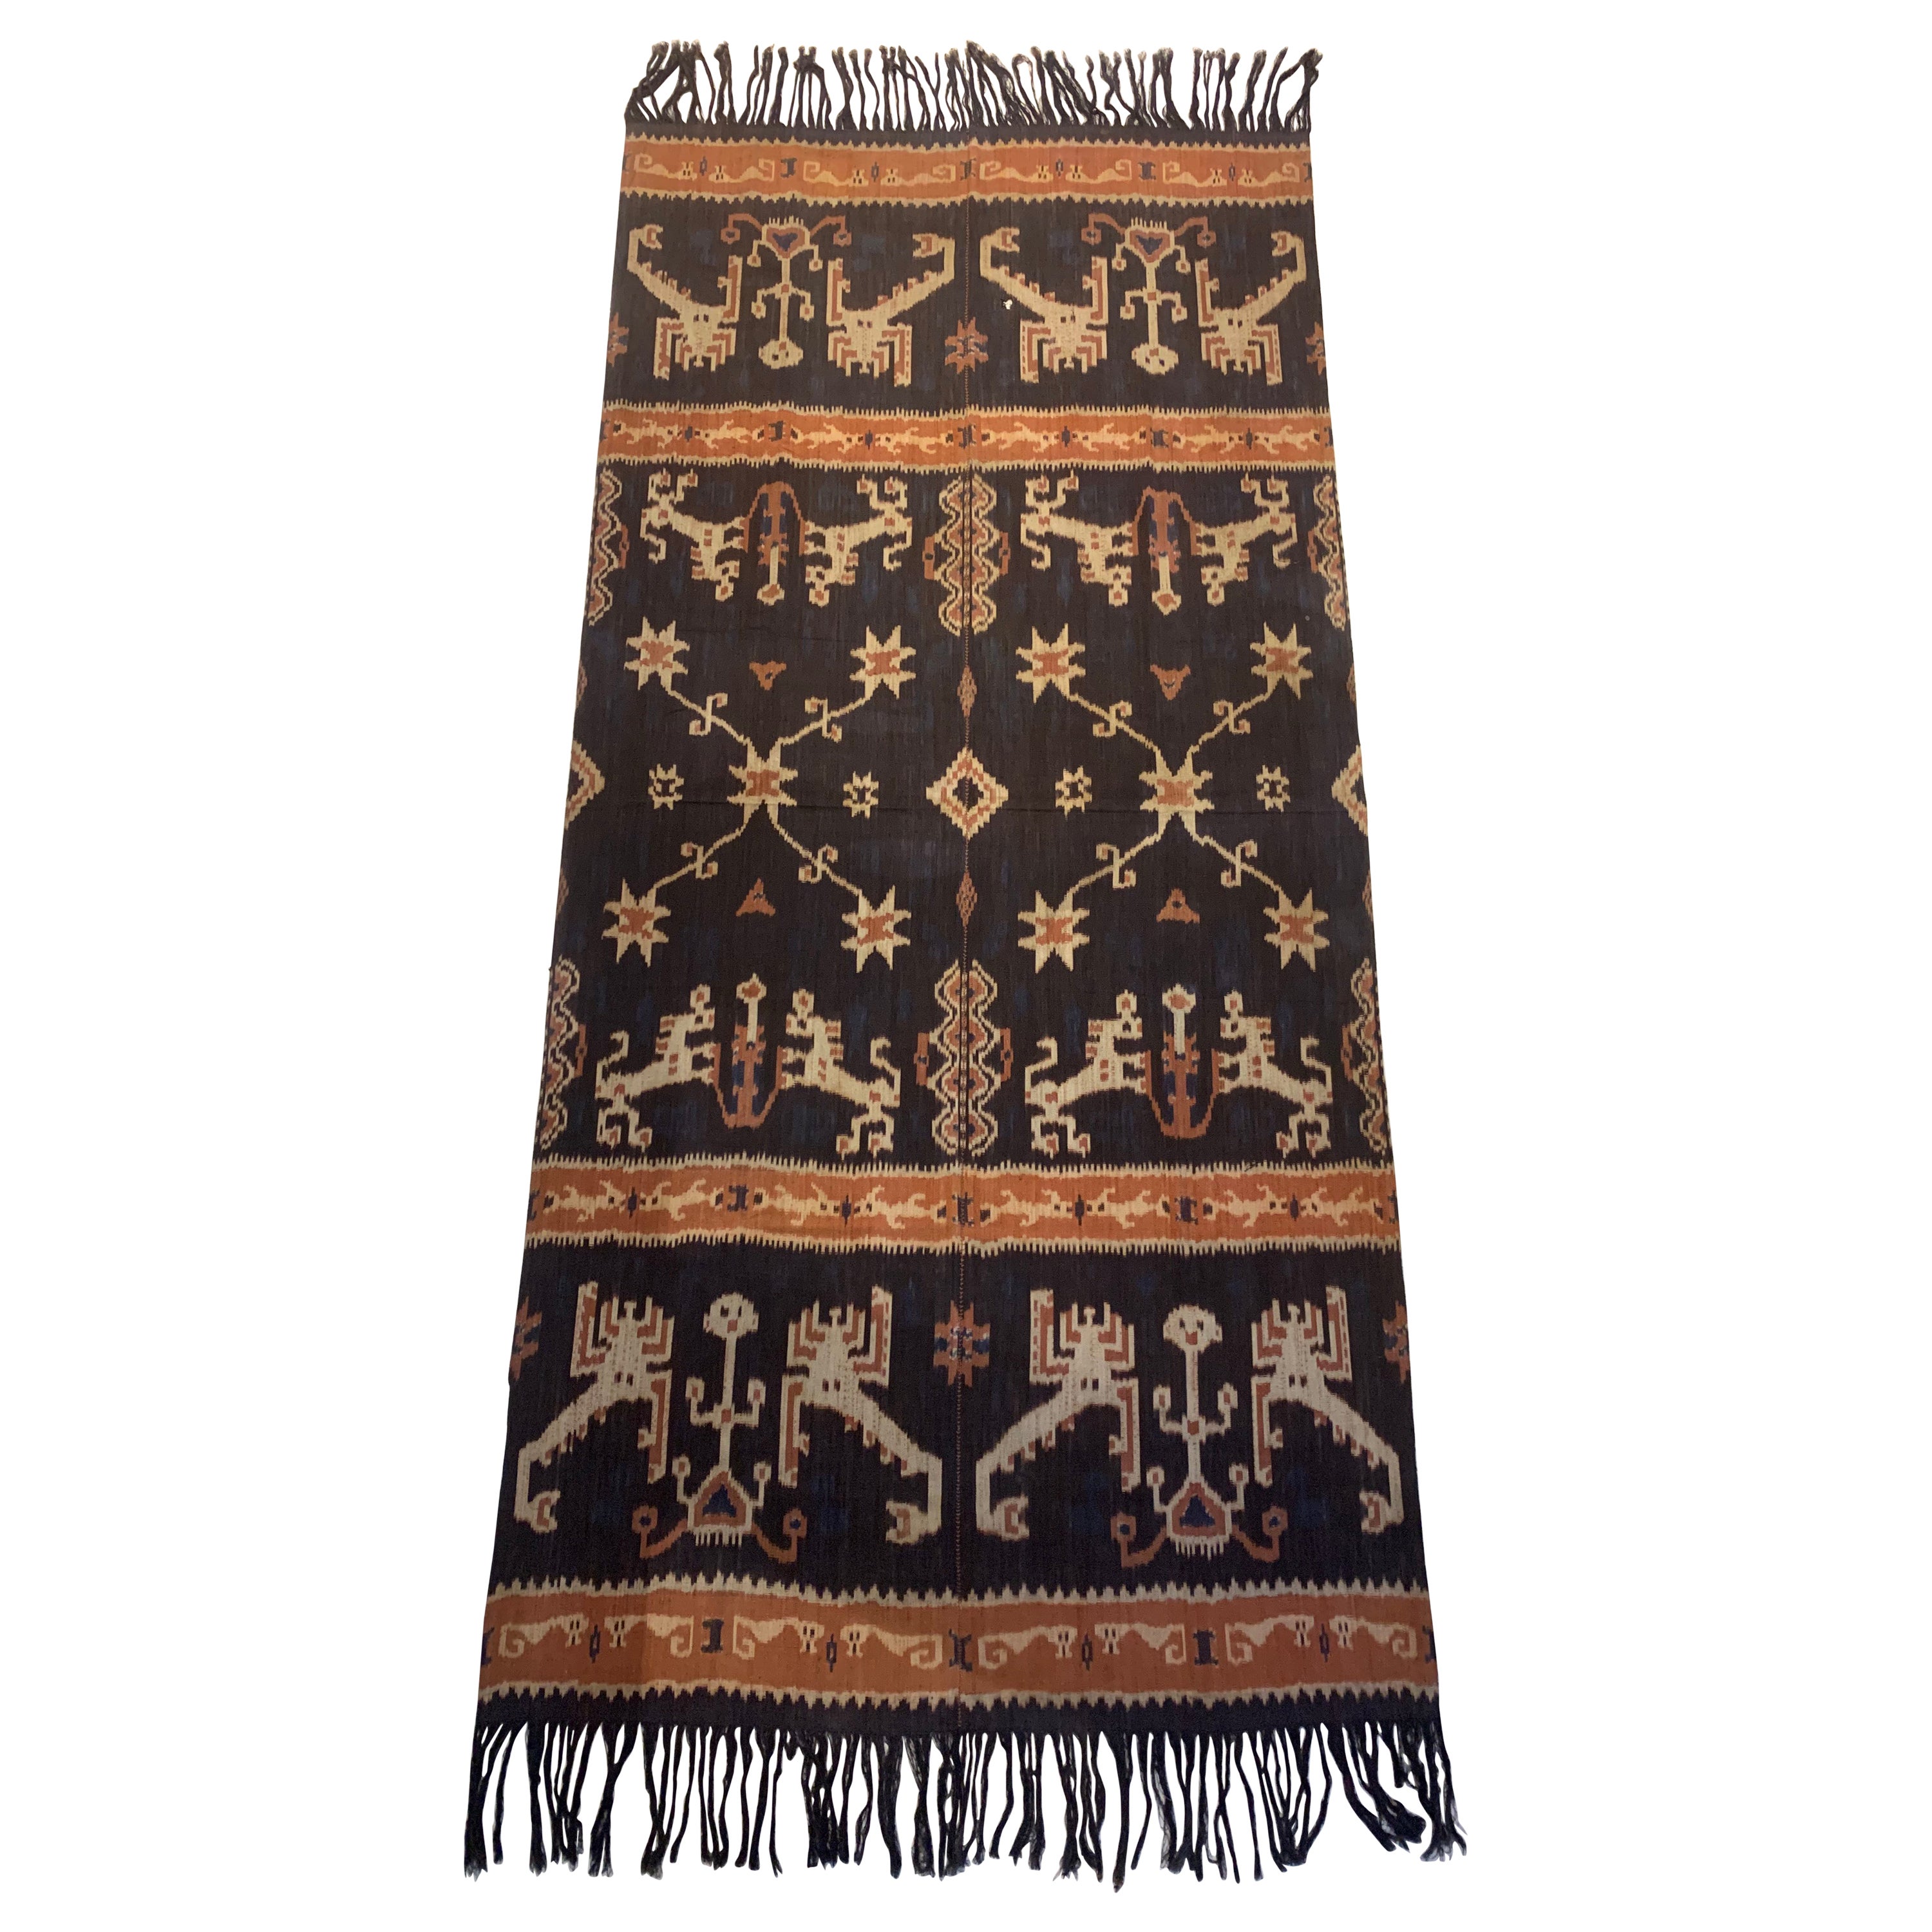 Ikat-Textil von Sumba-Insel mit atemberaubenden Stammesmotiven, Indonesien 